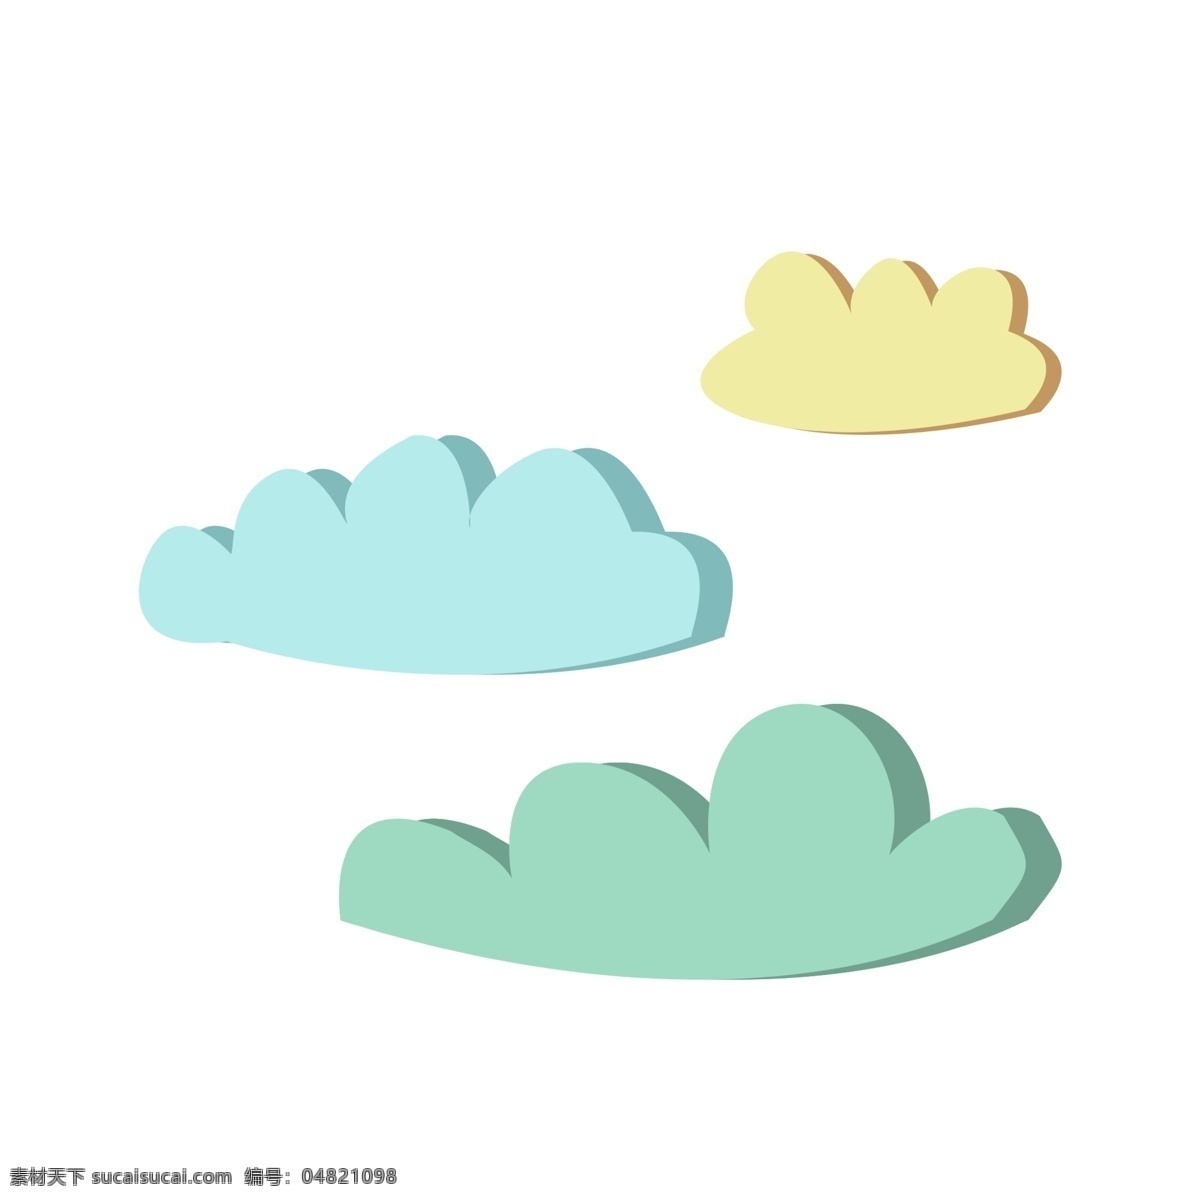 卡通 彩色 云彩 矢量图 云朵 云 彩色的云 卡通云 黄色的云